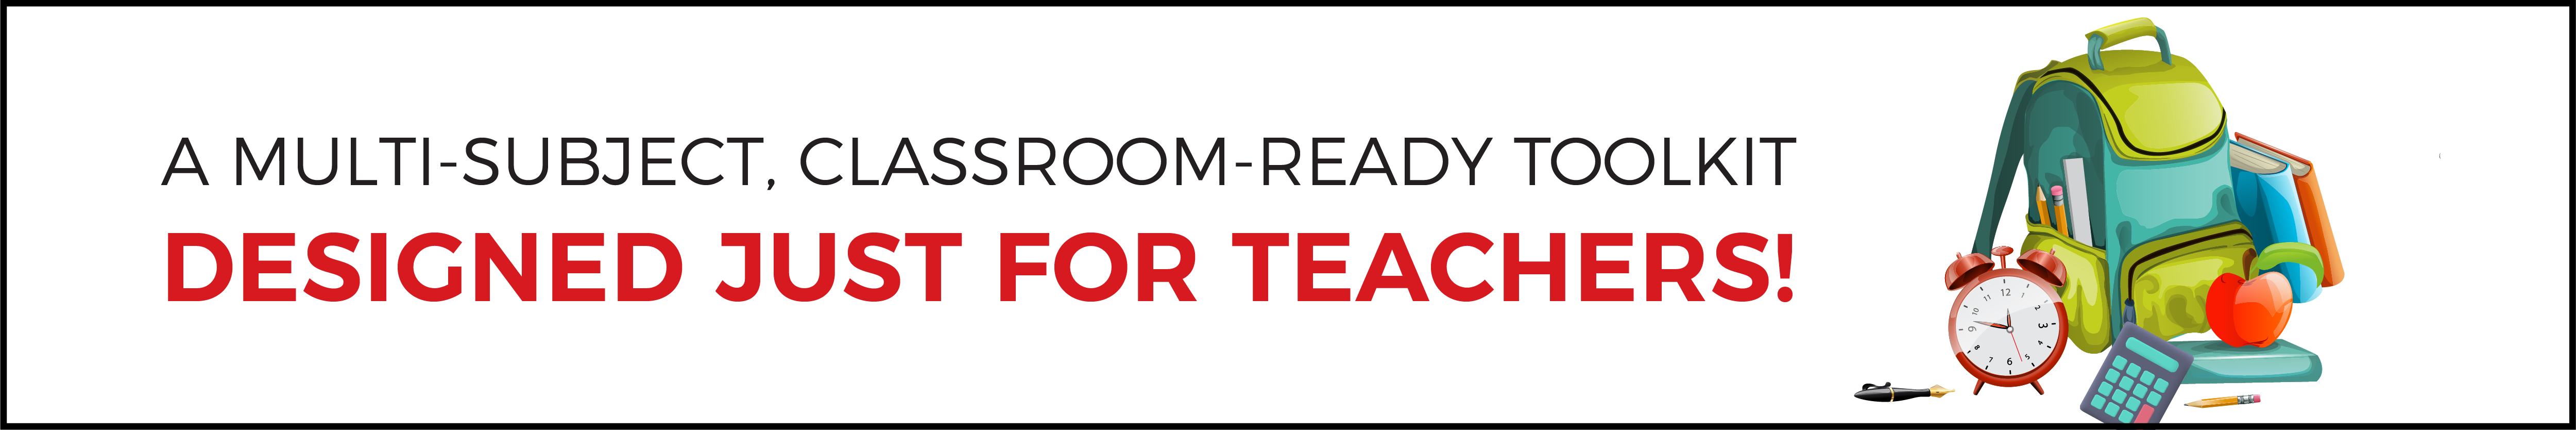 new teacher toolkit banner